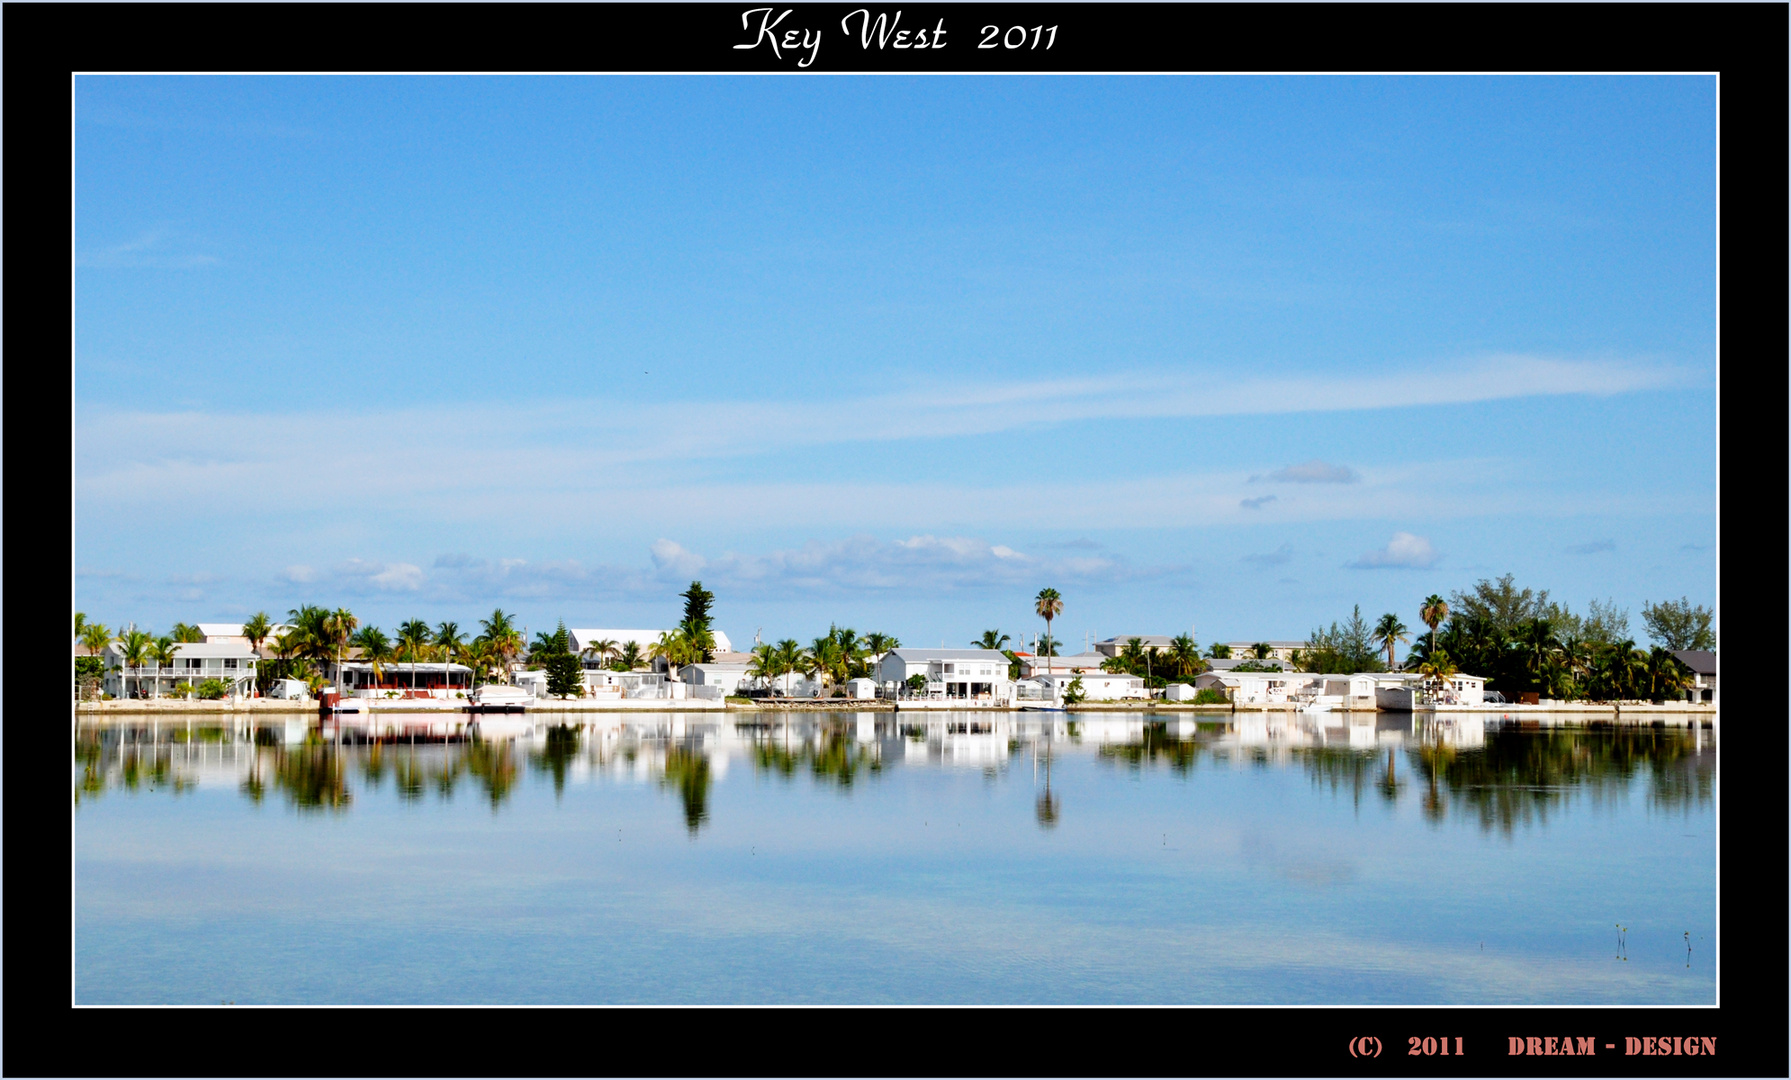 Key West 2011